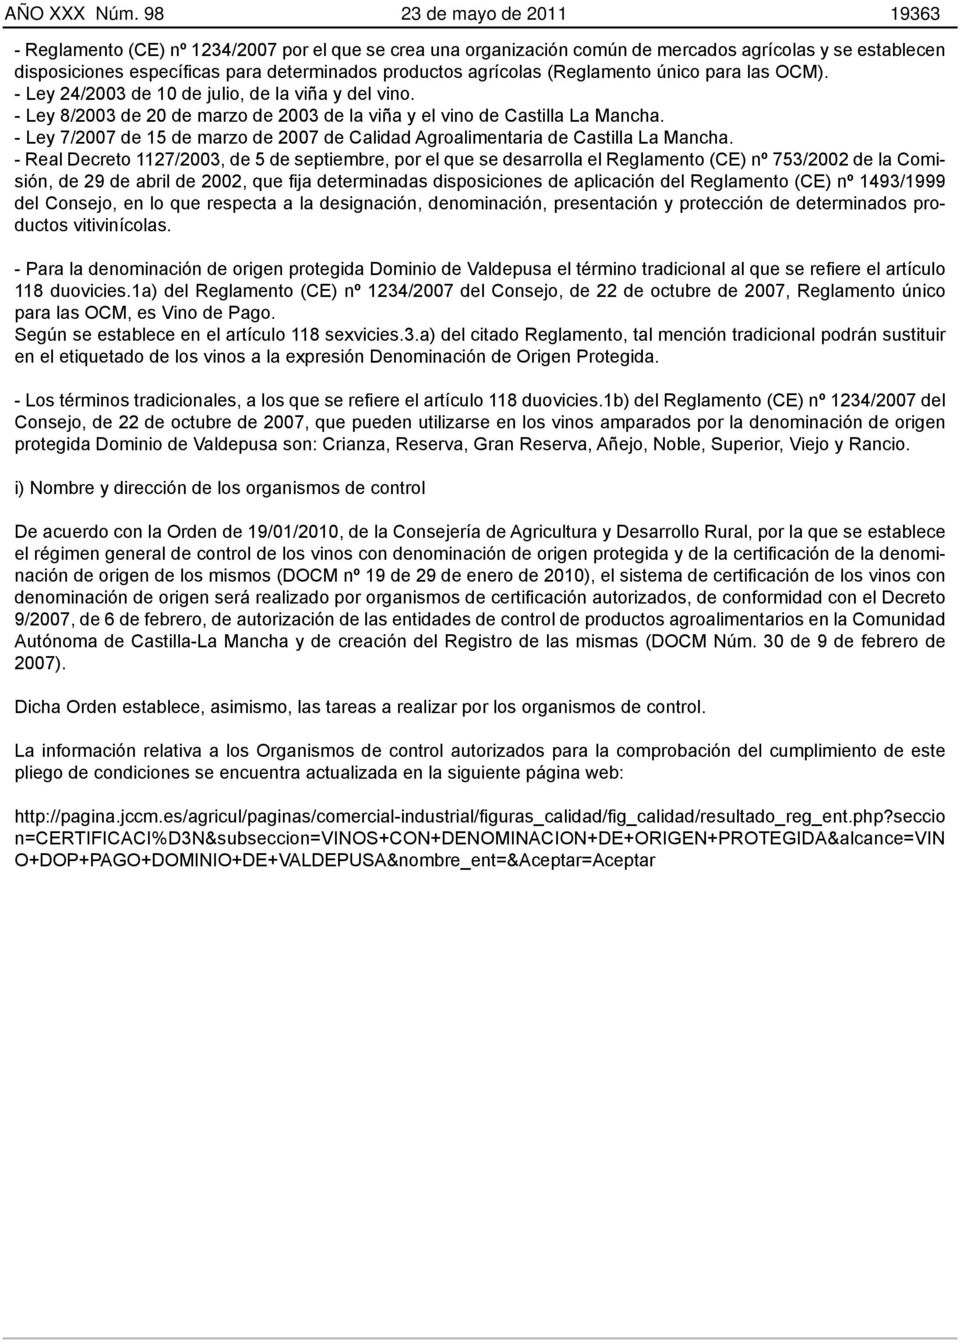 agrícolas (Reglamento único para las OCM). - Ley 24/2003 de 10 de julio, de la viña y del vino. - Ley 8/2003 de 20 de marzo de 2003 de la viña y el vino de Castilla La Mancha.